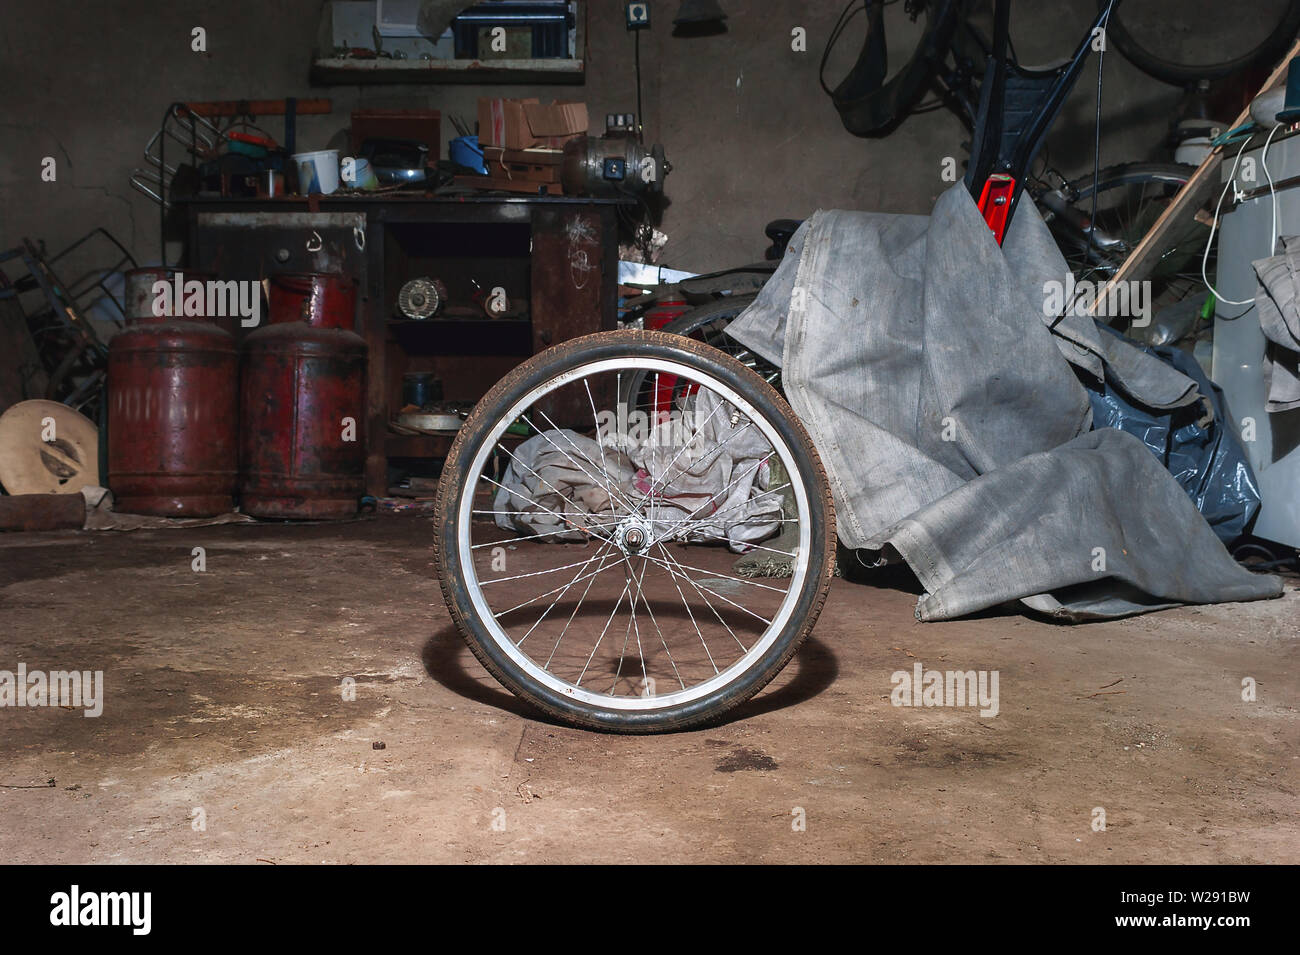 Roue de vélo sale sur le sol d'une maison malpropre avec de l'équipement de garage, Workbench, outils et le tissu en arrière-plan. Banque D'Images